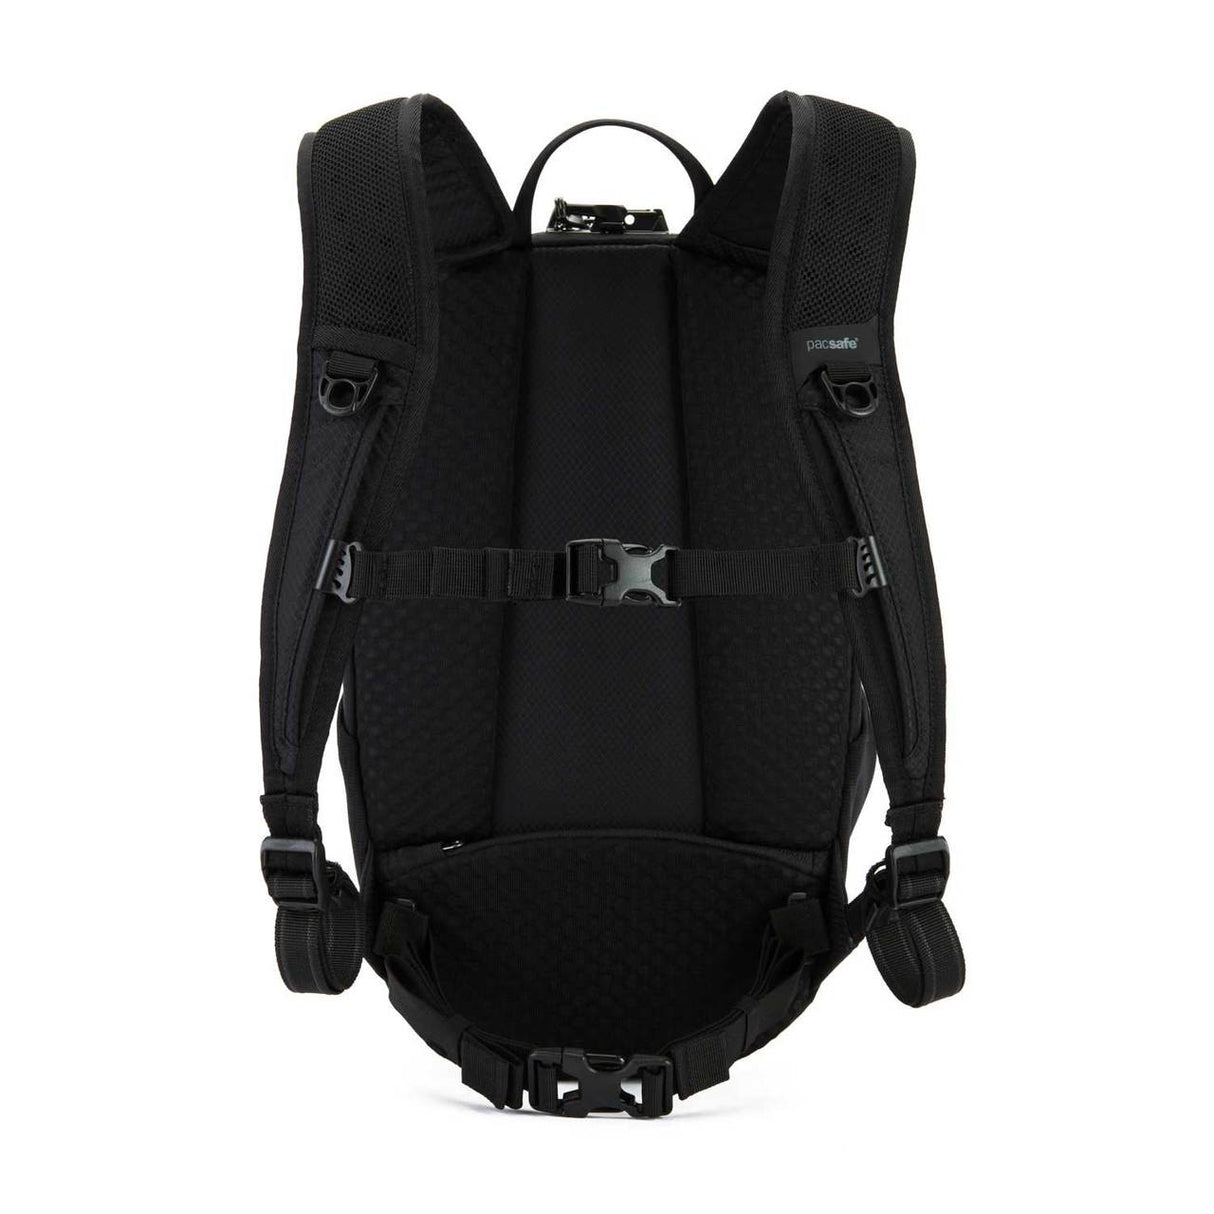 Pacsafe Venturesafe X12 anti-theft backpack